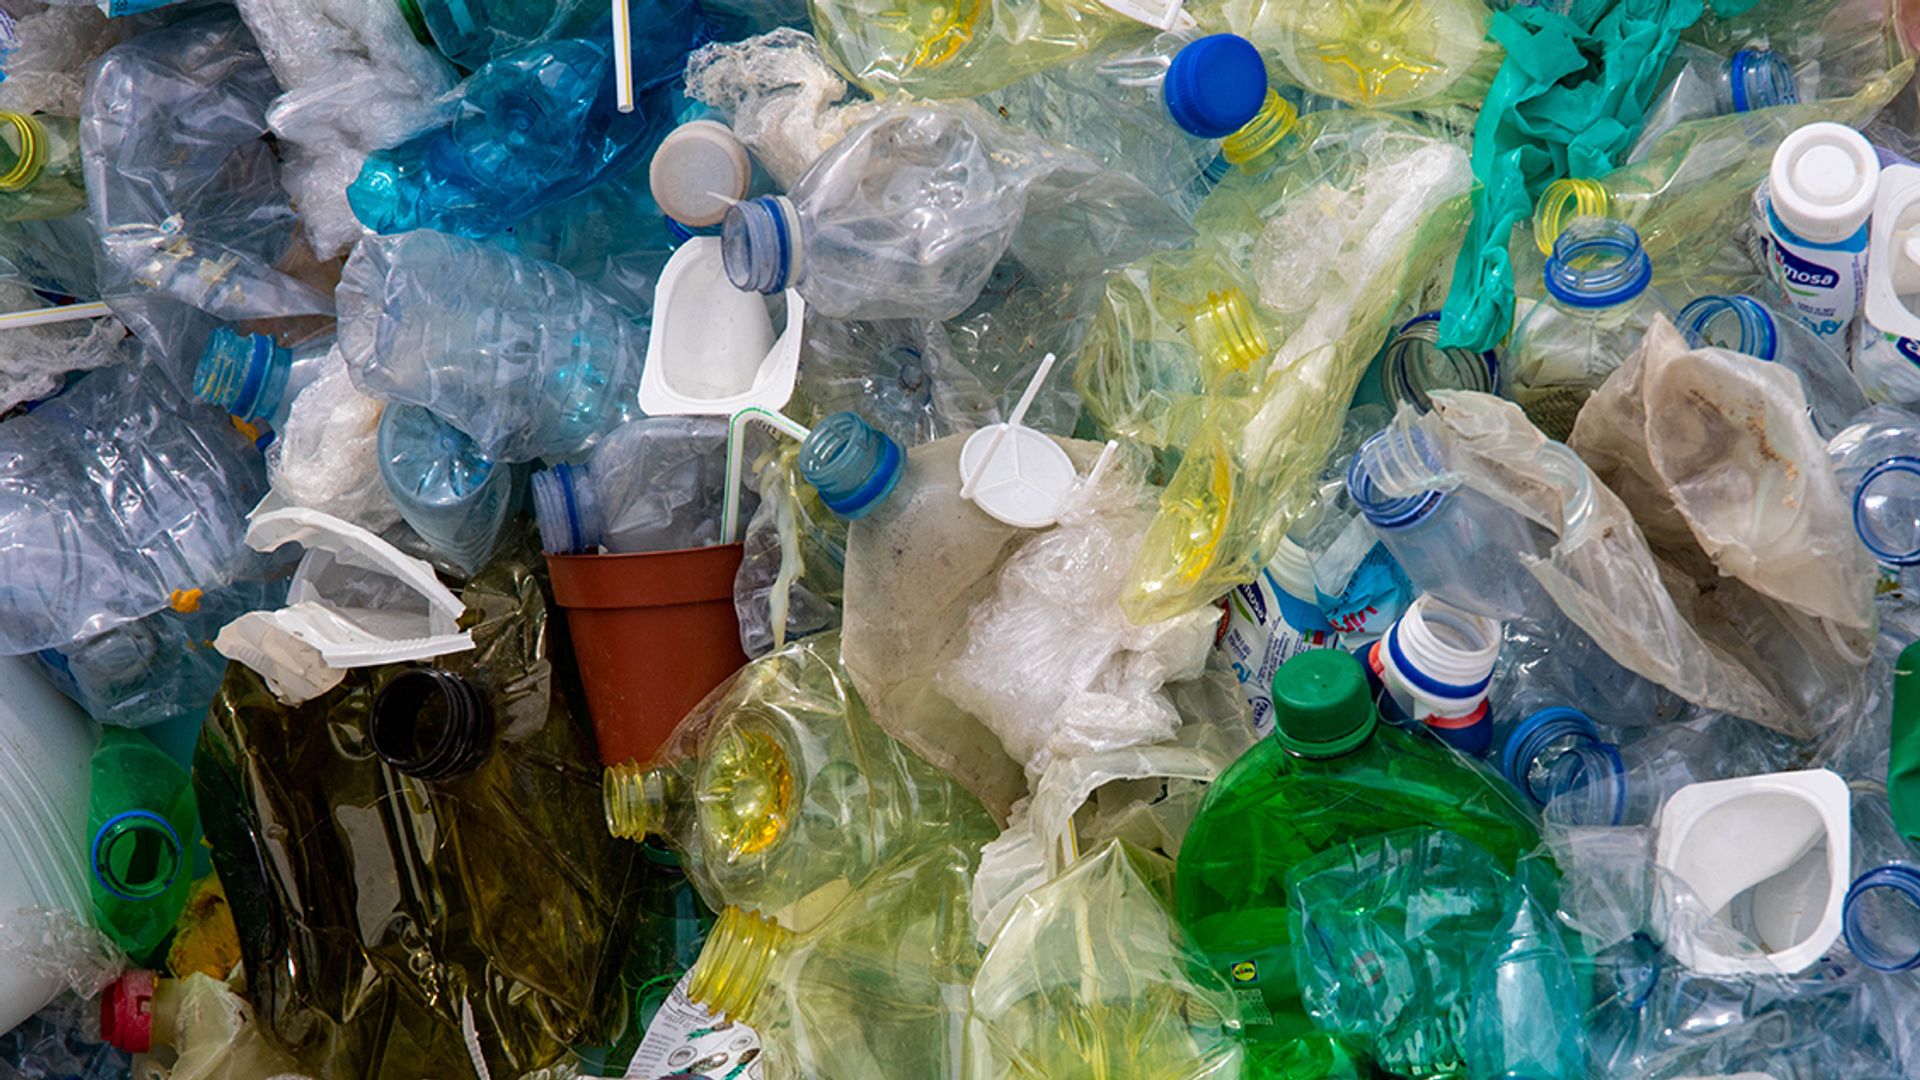 Product Opvoeding Vermindering Waarom is plastic afval scheiden zo moeilijk? - Kassa - BNNVARA